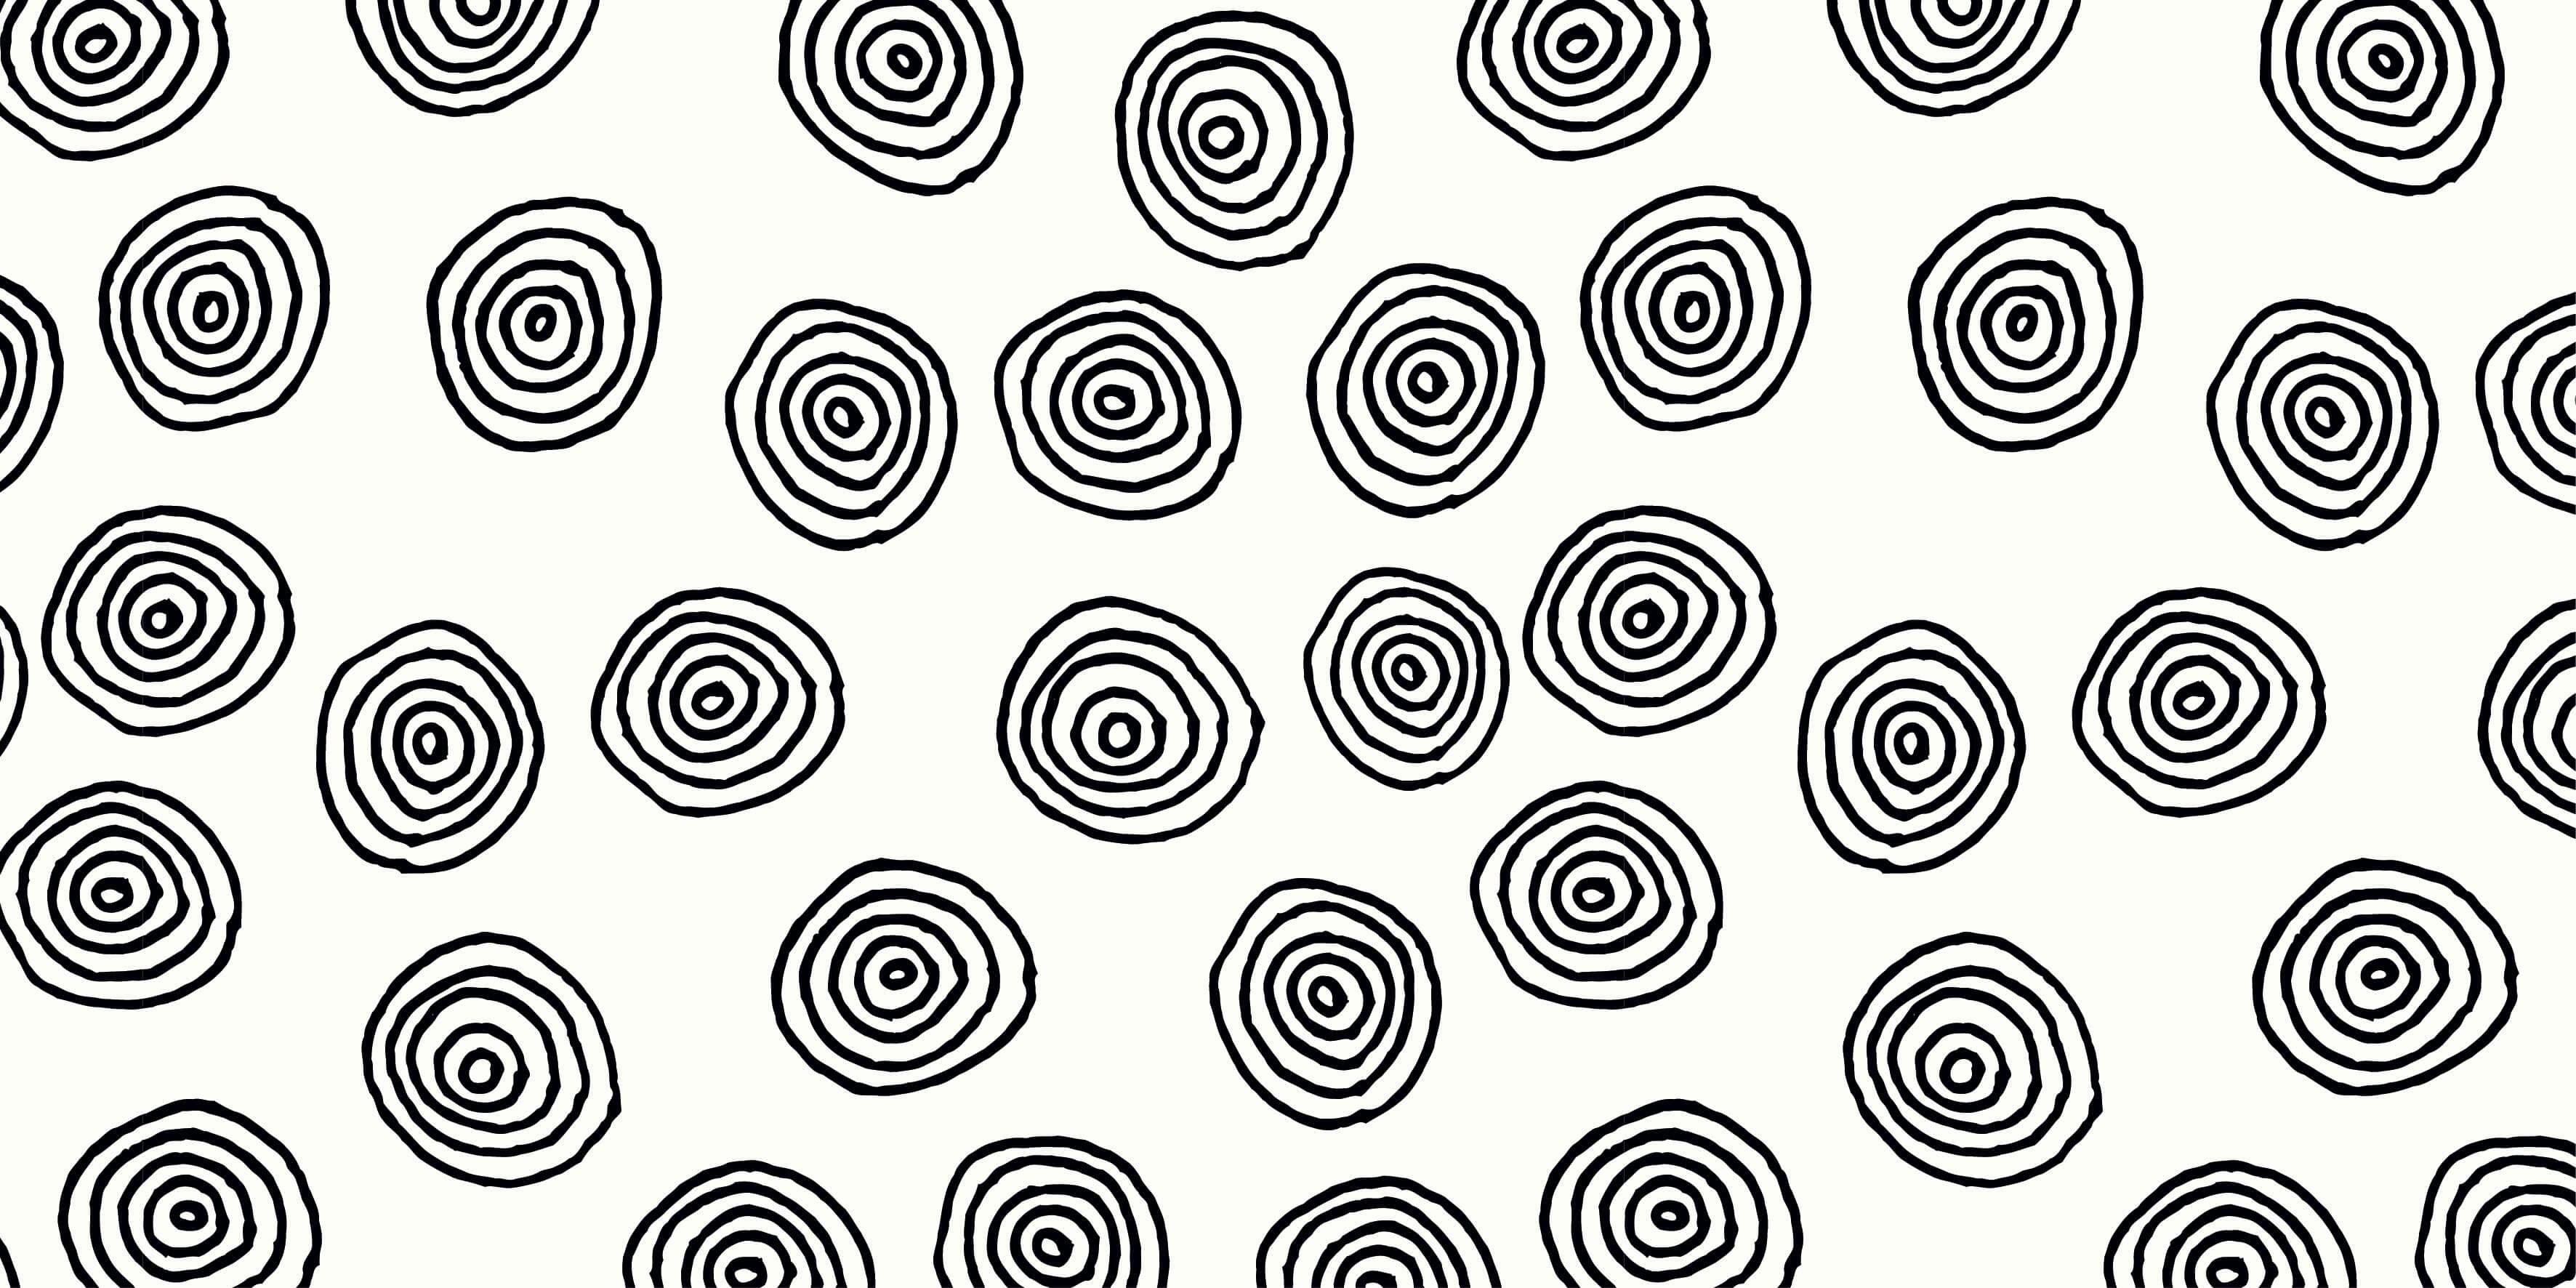 Abstract - Abstracte cirkels in zwart/wit - Hobbykamer